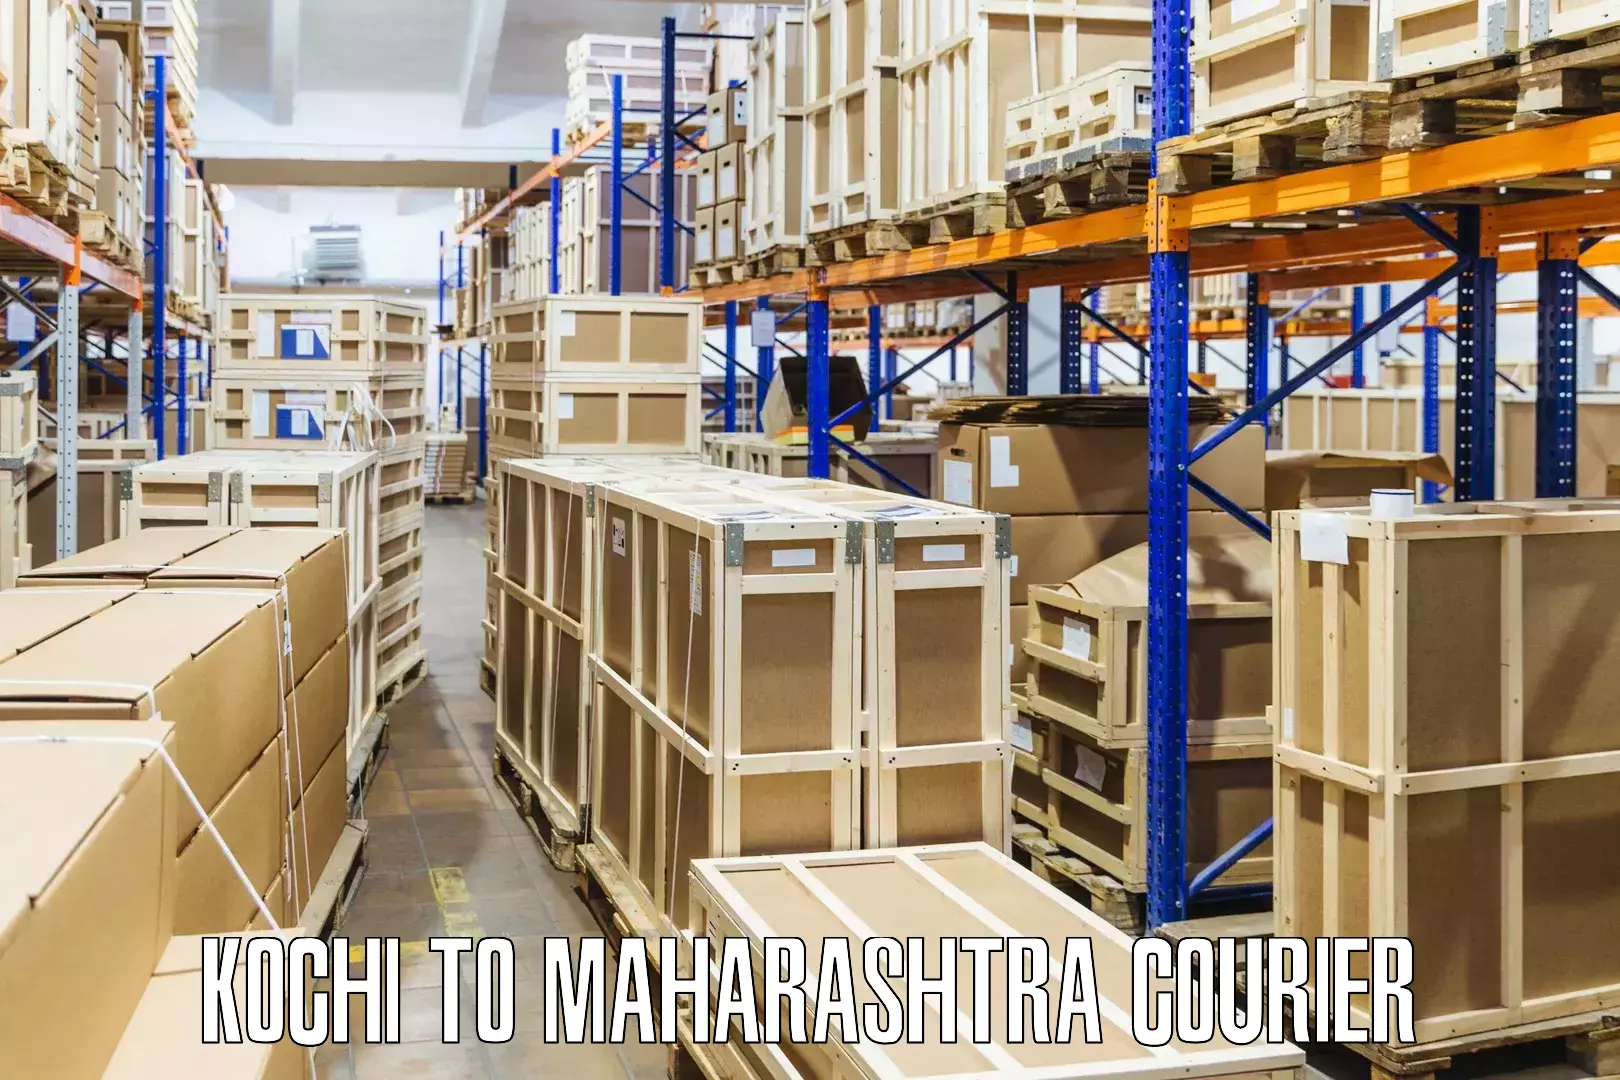 Dynamic courier operations Kochi to Maharashtra